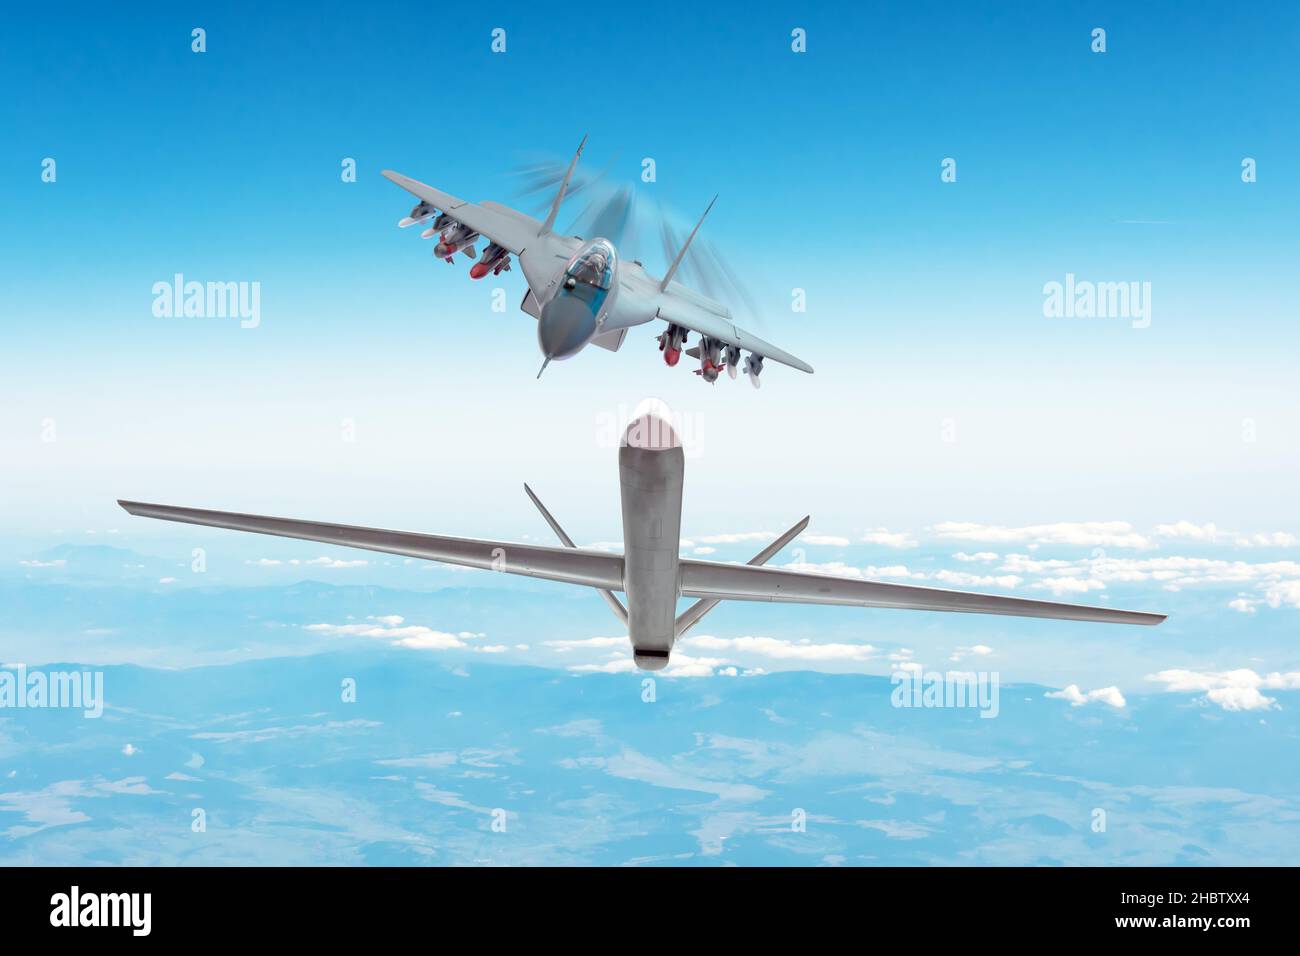 Chasseur de combat poursuivant un drone cible - drone militaire uav sans pilote.Conflit, guerre.Forces aérospatiales Banque D'Images